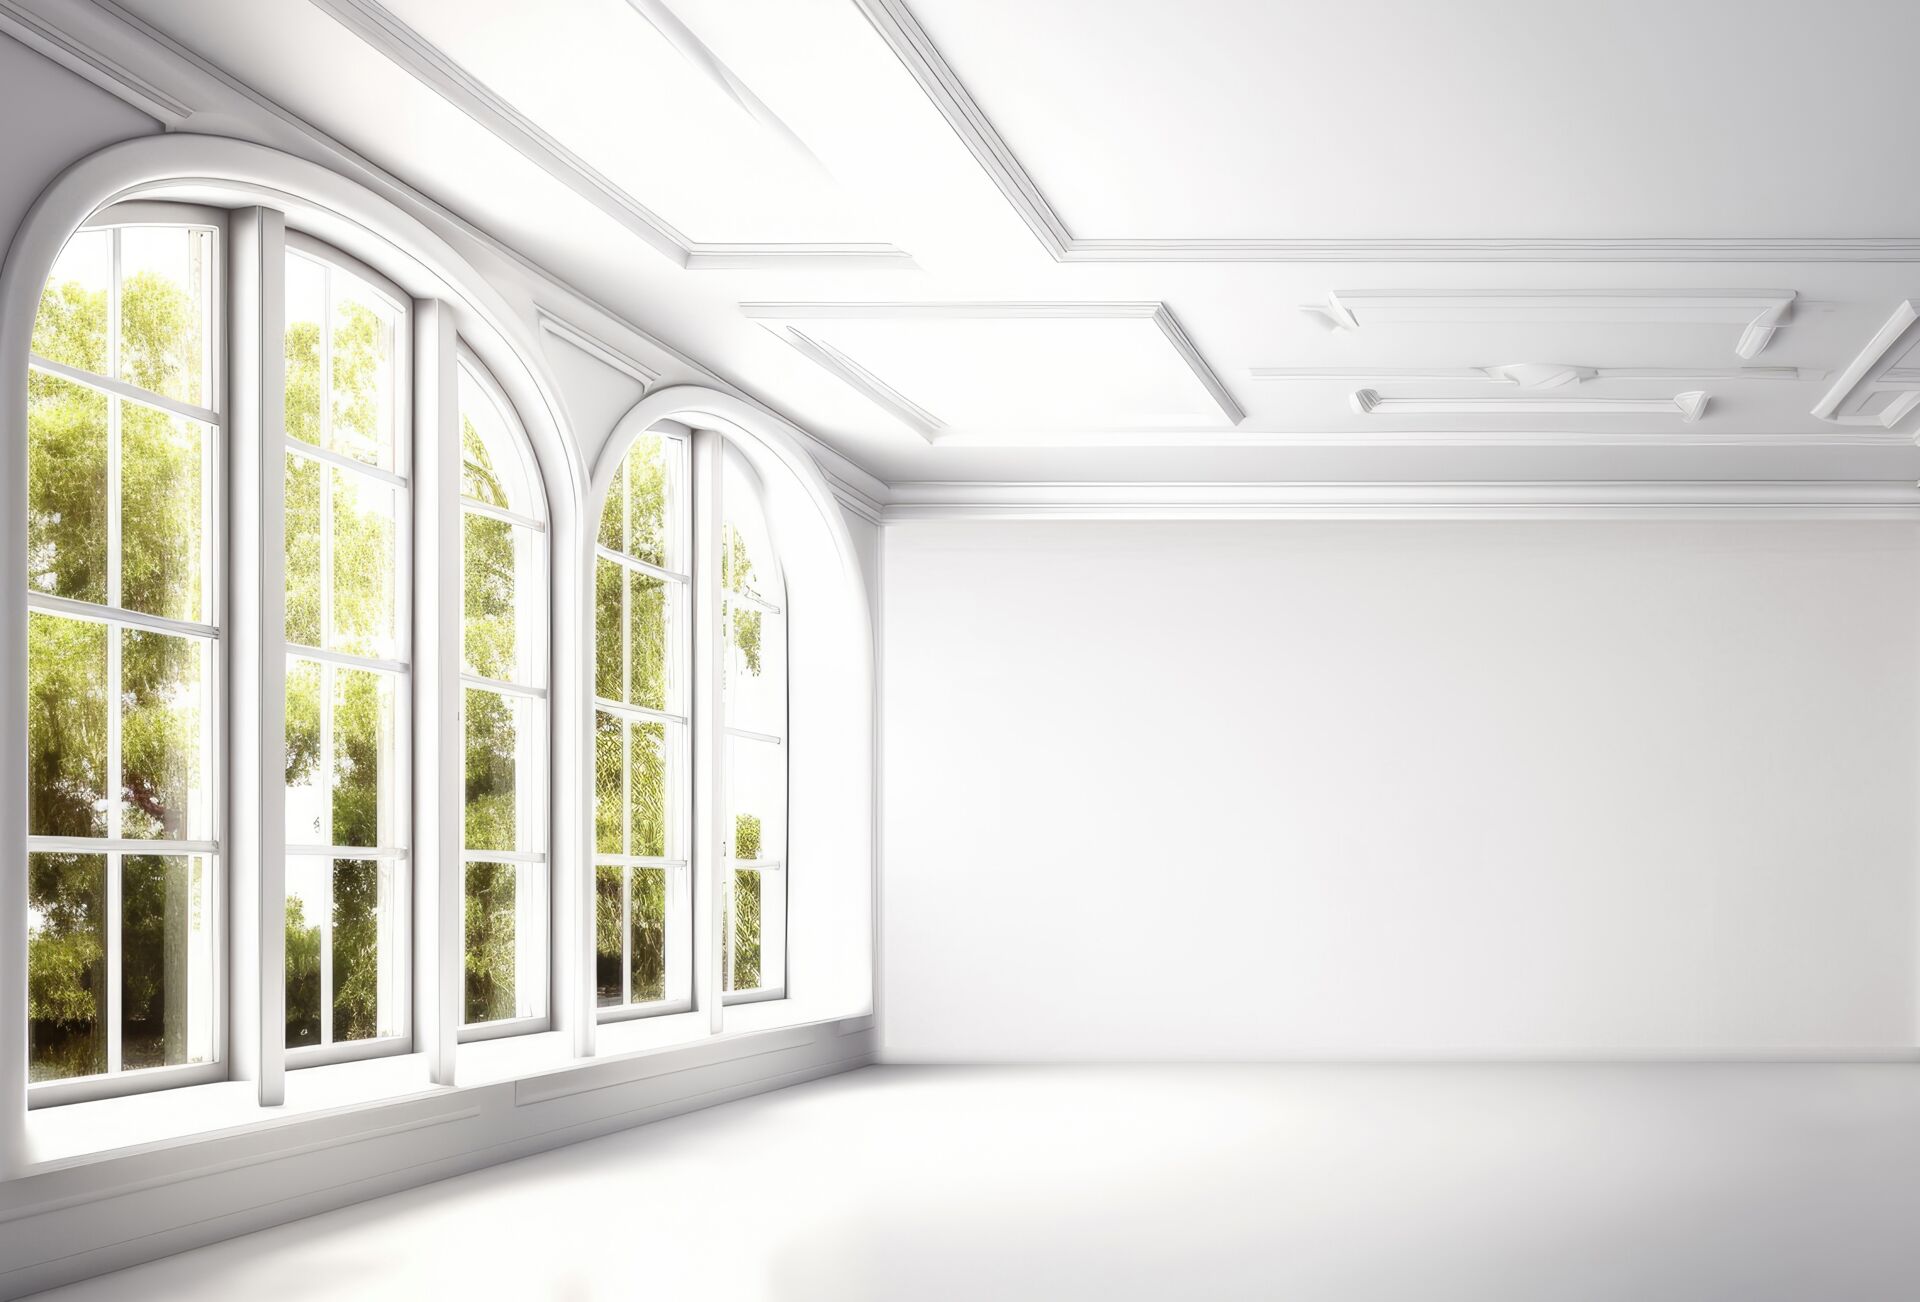 Beratung & Planung für Fenster, Türen oder Wintergarten